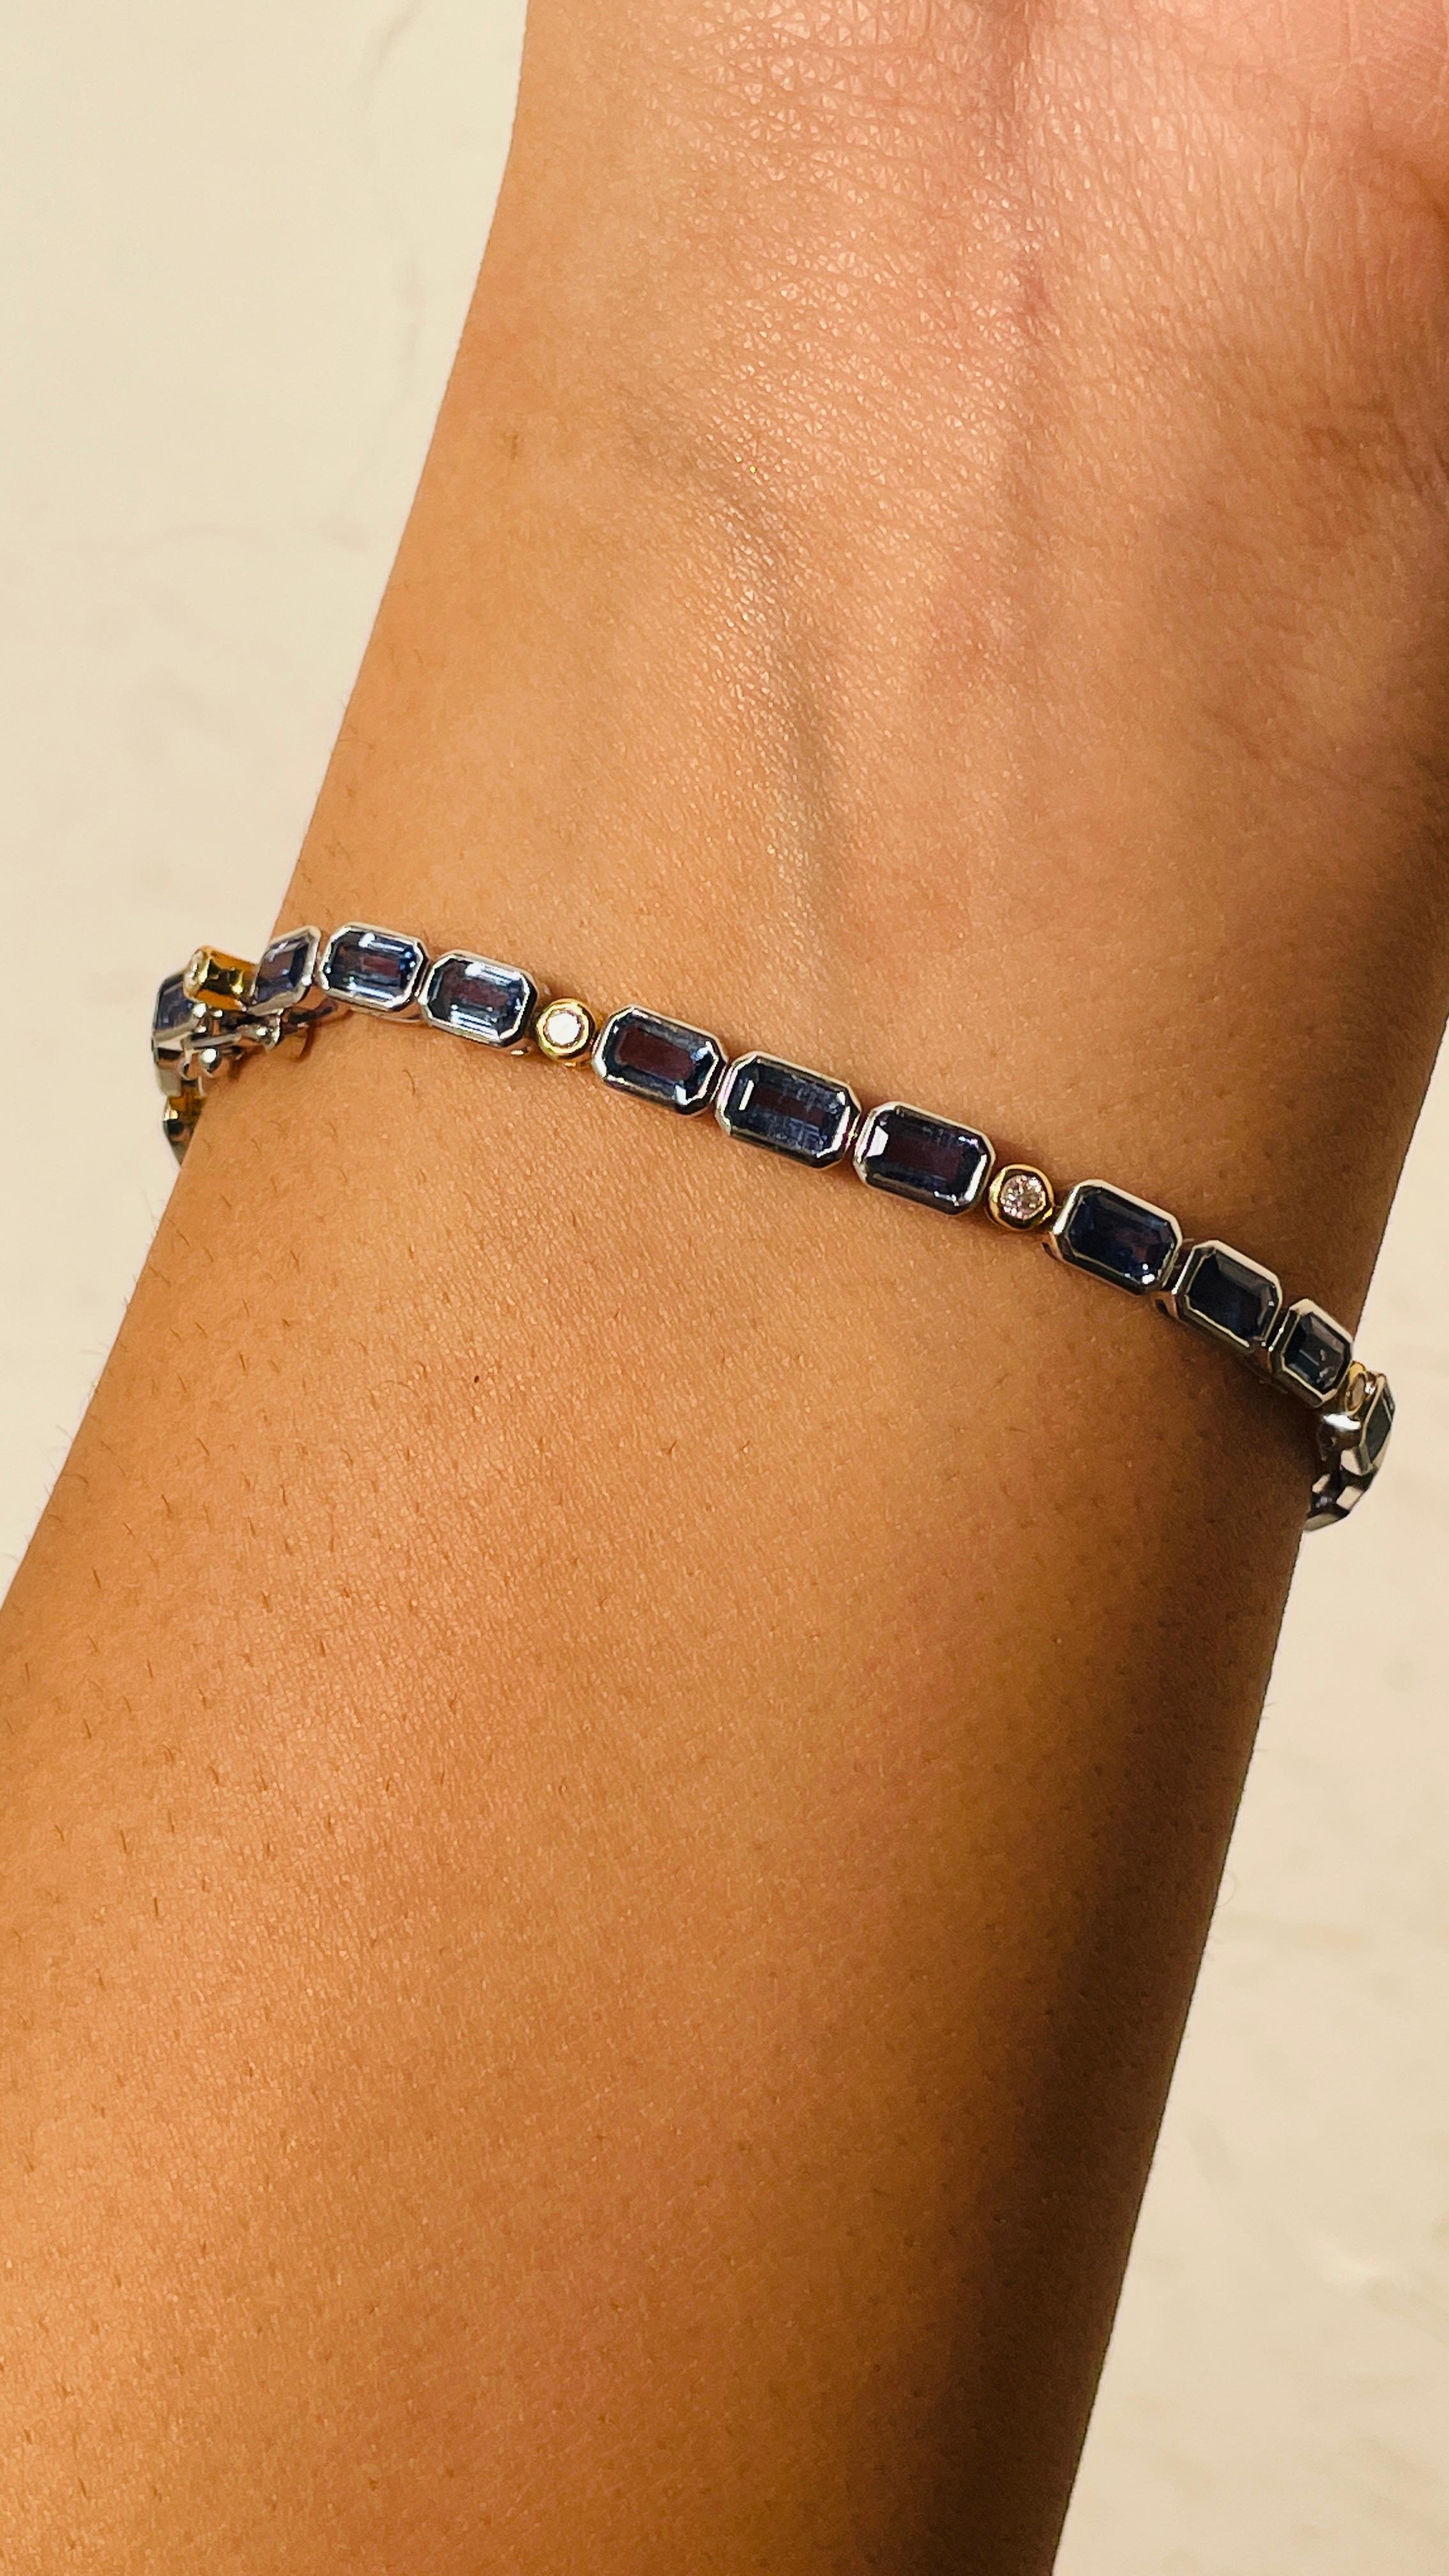 Bracelet en saphir bleu en or 18K. Il possède une pierre précieuse de taille octogonale parfaite, constellée de diamants, qui vous permettra de vous distinguer en toute occasion ou lors d'un événement. 
Un bracelet de tennis est un bijou essentiel